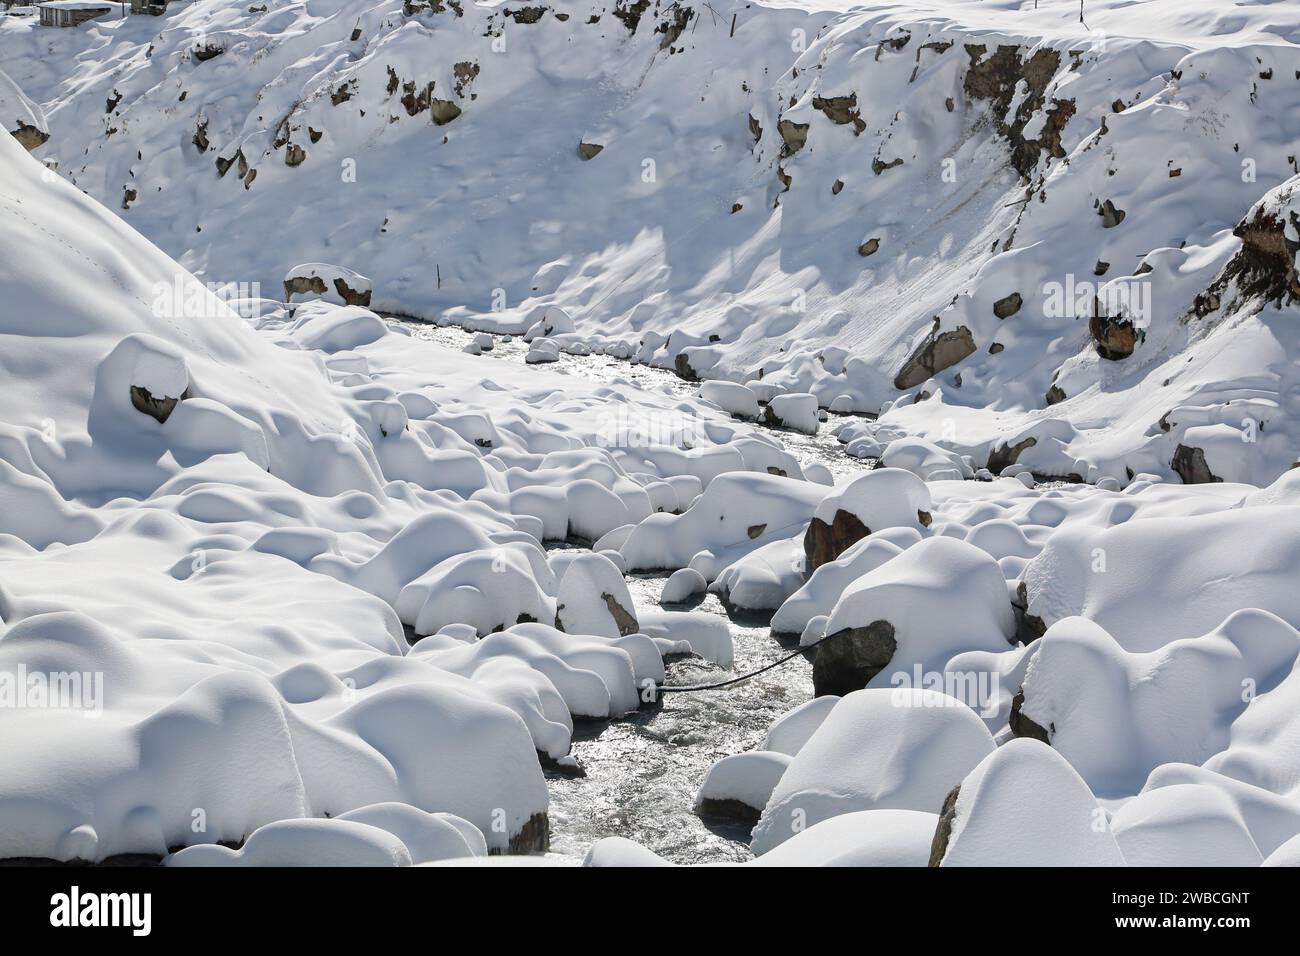 Riva del fiume coperta di neve e pietre in Himalaya. Punteggiata da lunghe catene montuose e scintillanti gioielli nella mappa del mondo, Uttarakhand è famosa per questo Foto Stock